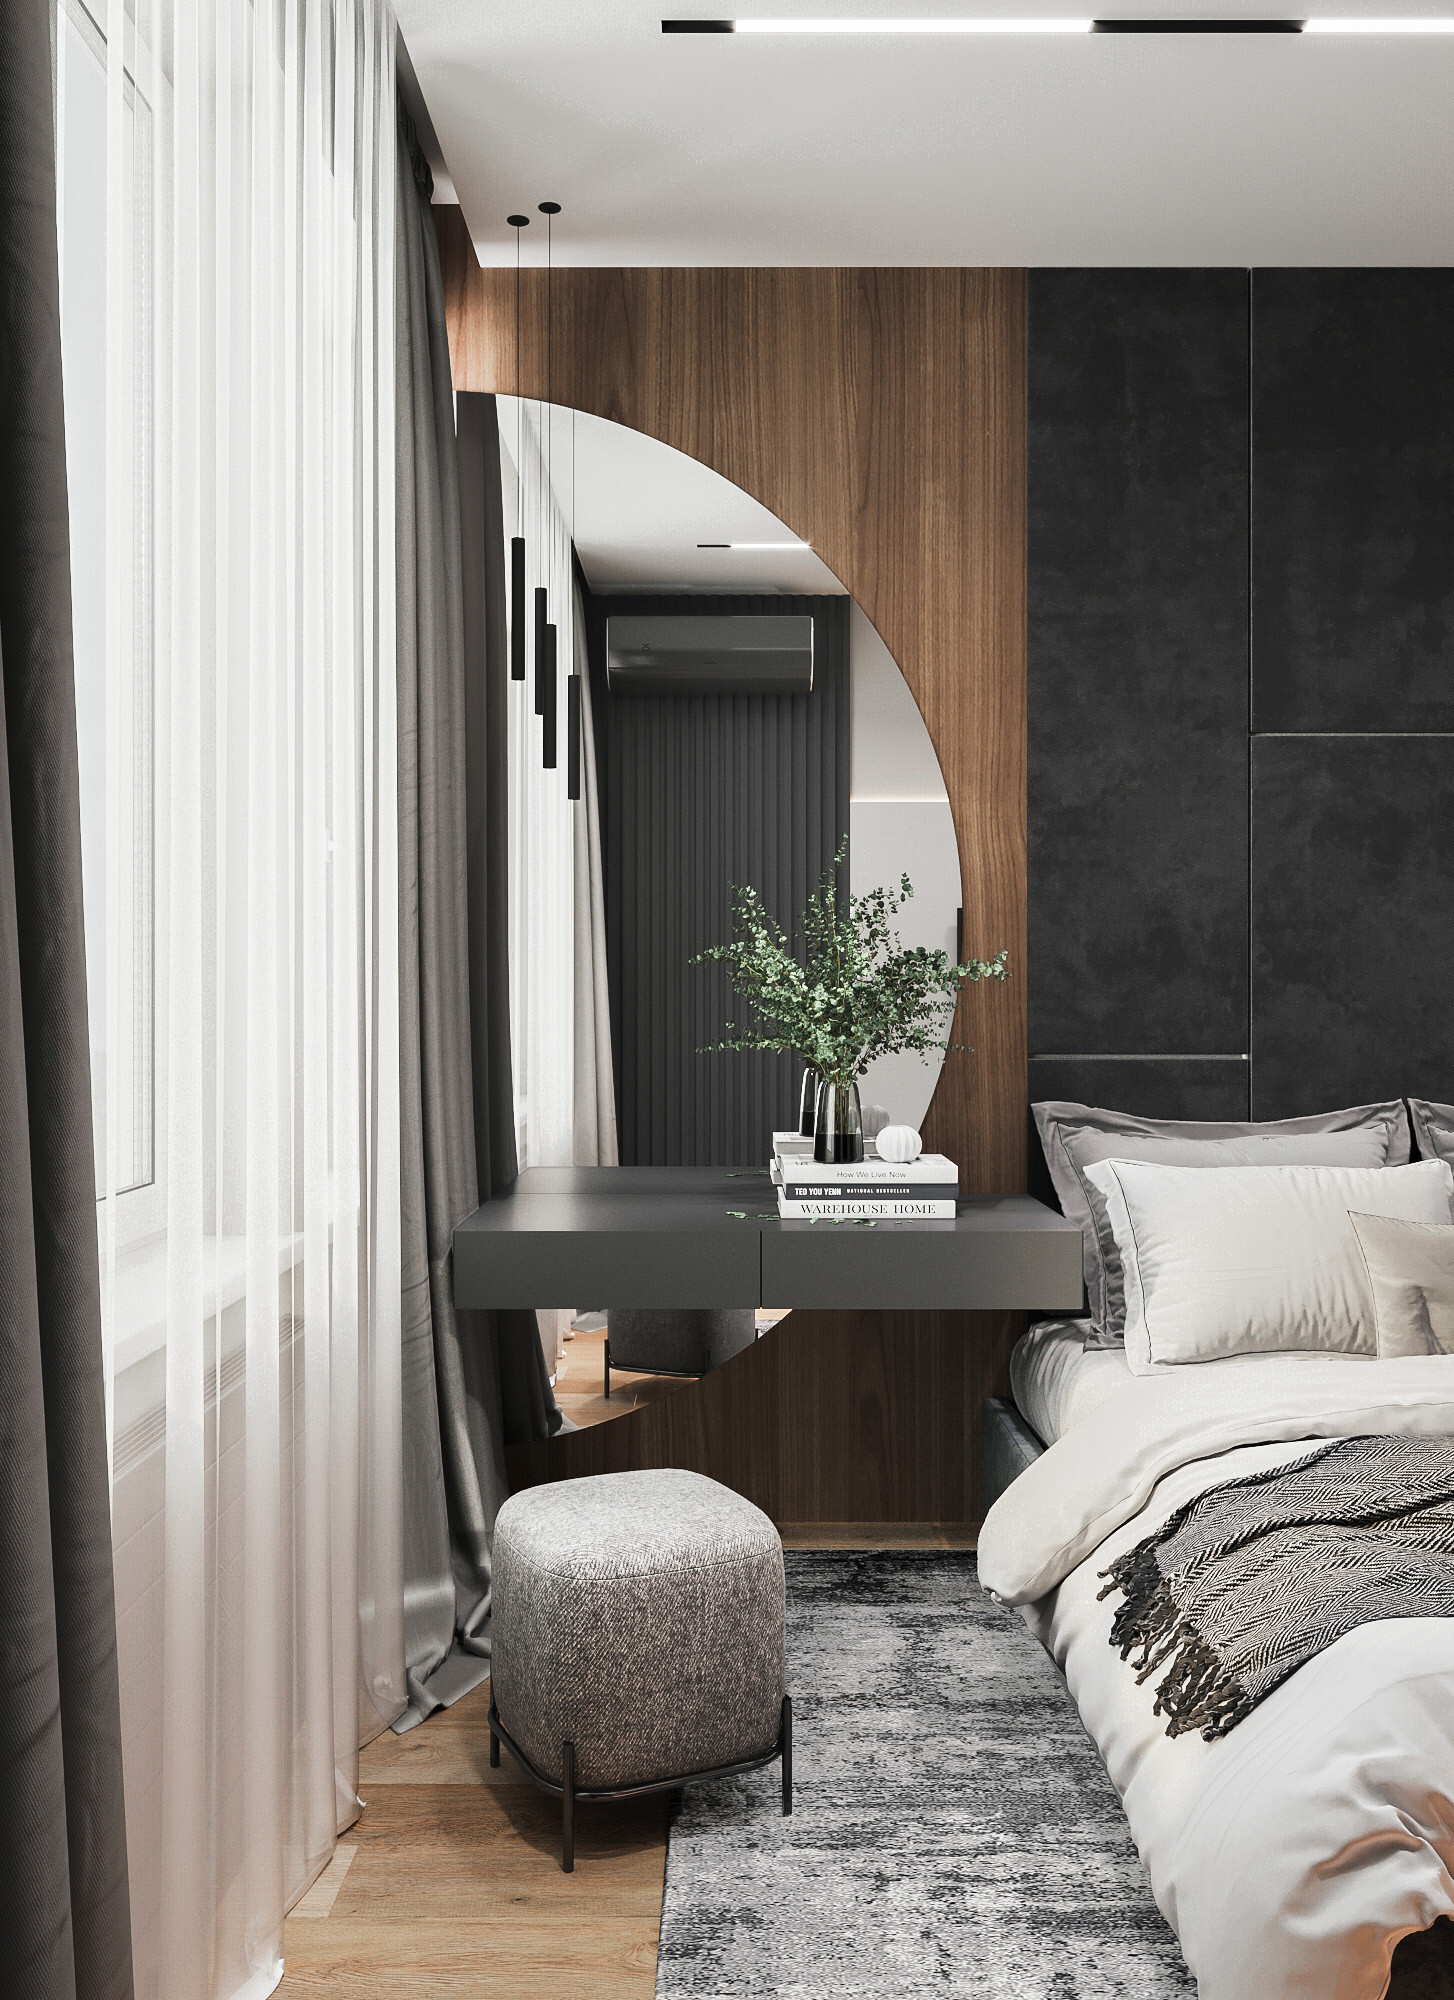 Интерьер спальни с шкафом у кровати в современном стиле, в стиле лофт, эко и контемпорарях